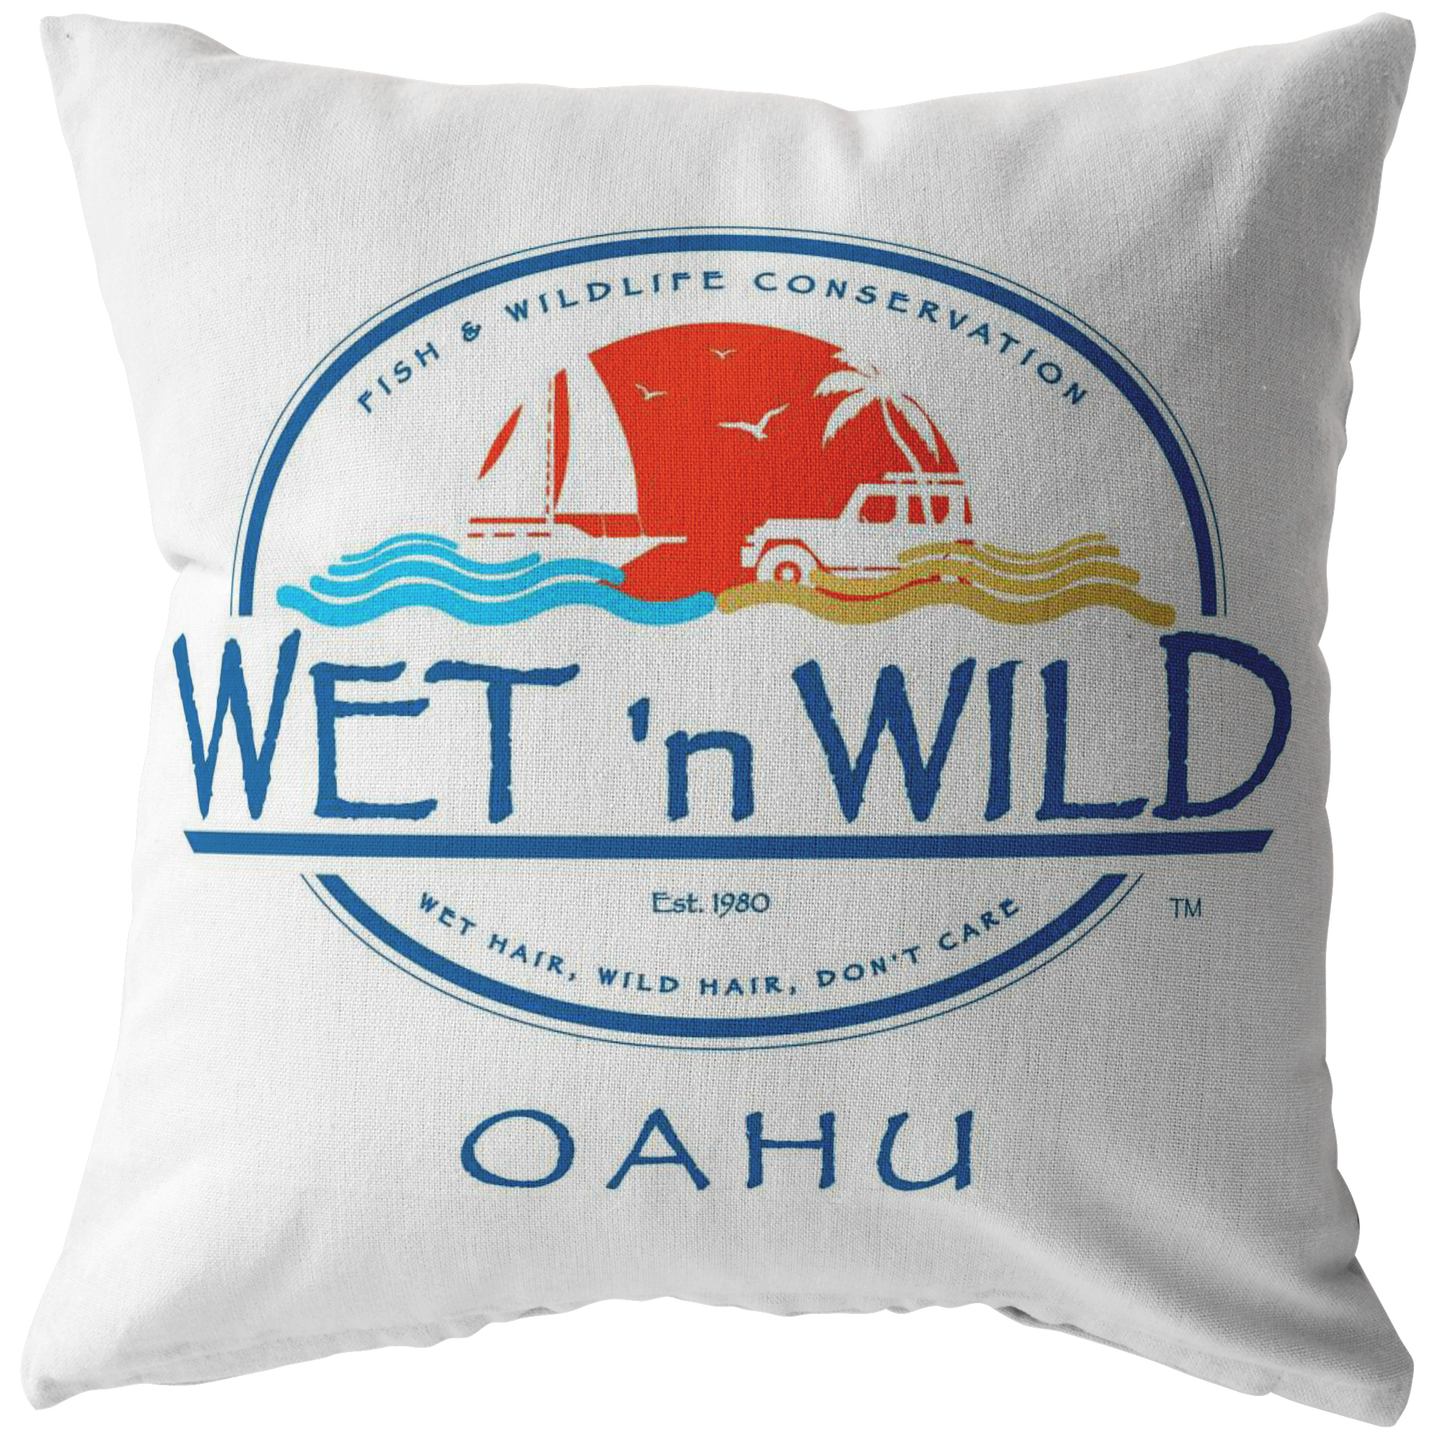 Oahu Pillow